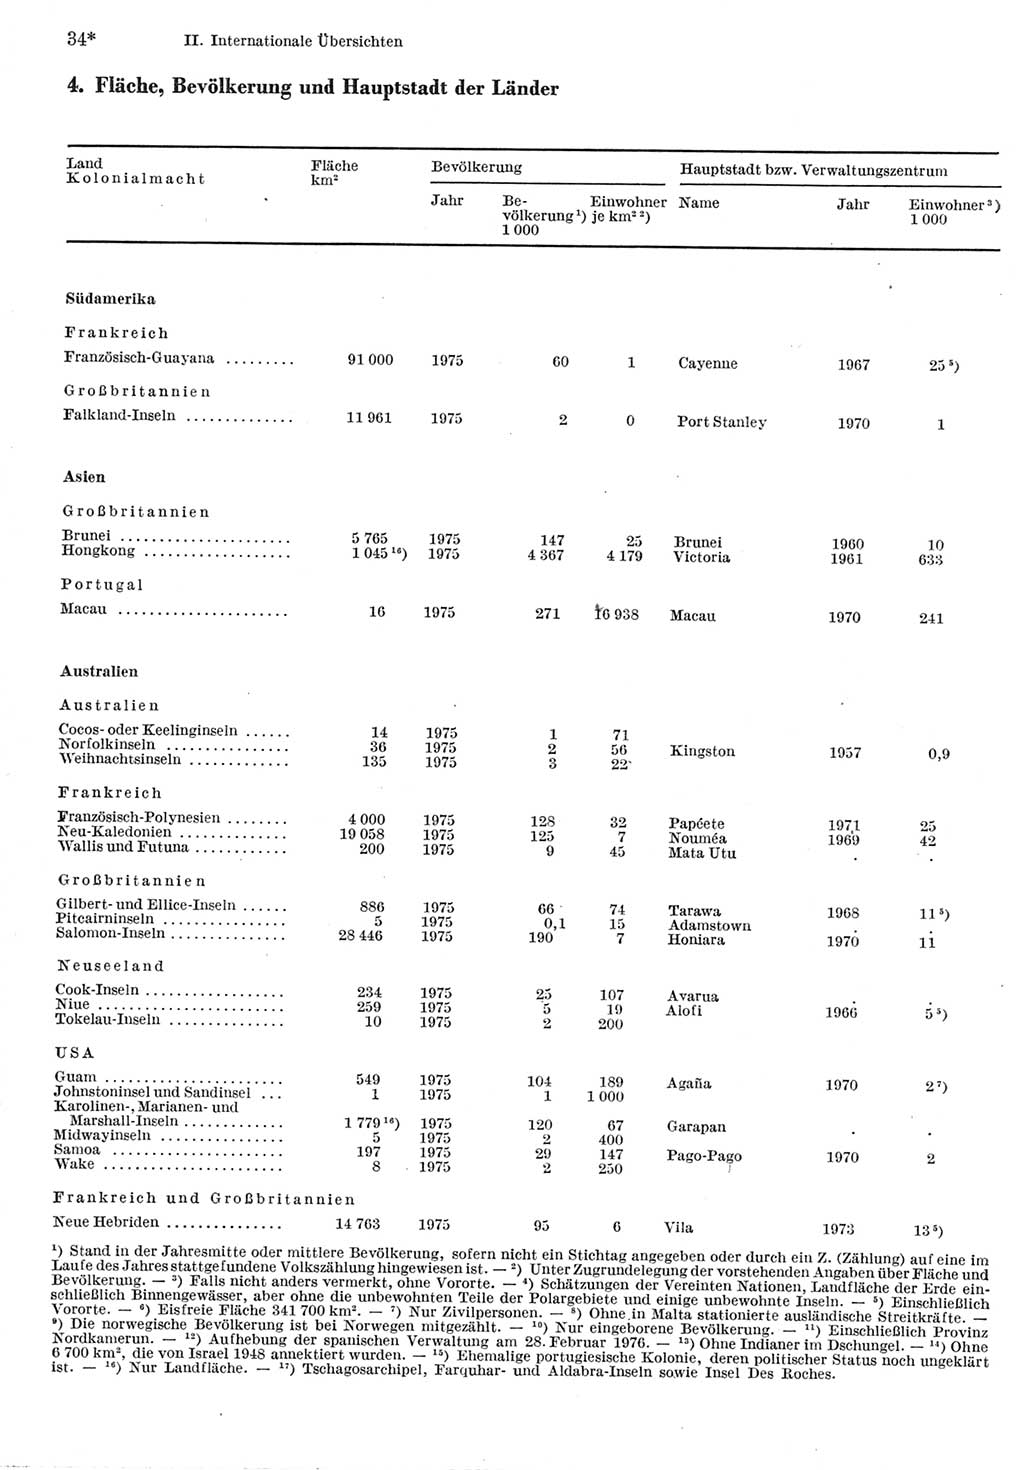 Statistisches Jahrbuch der Deutschen Demokratischen Republik (DDR) 1977, Seite 34 (Stat. Jb. DDR 1977, S. 34)